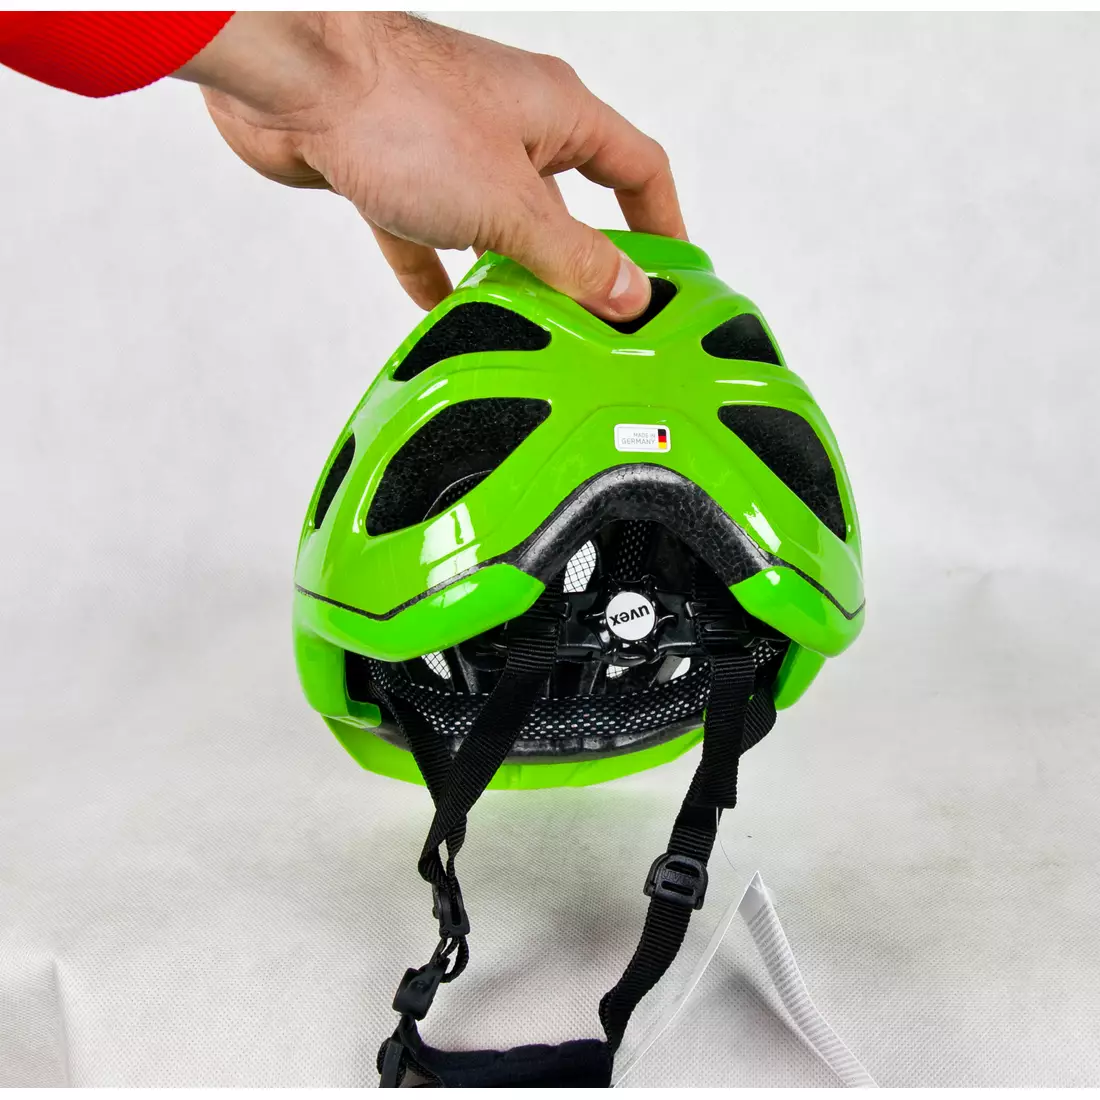 Cyklistická prilba UVEX ADIGE zelená a citrónová